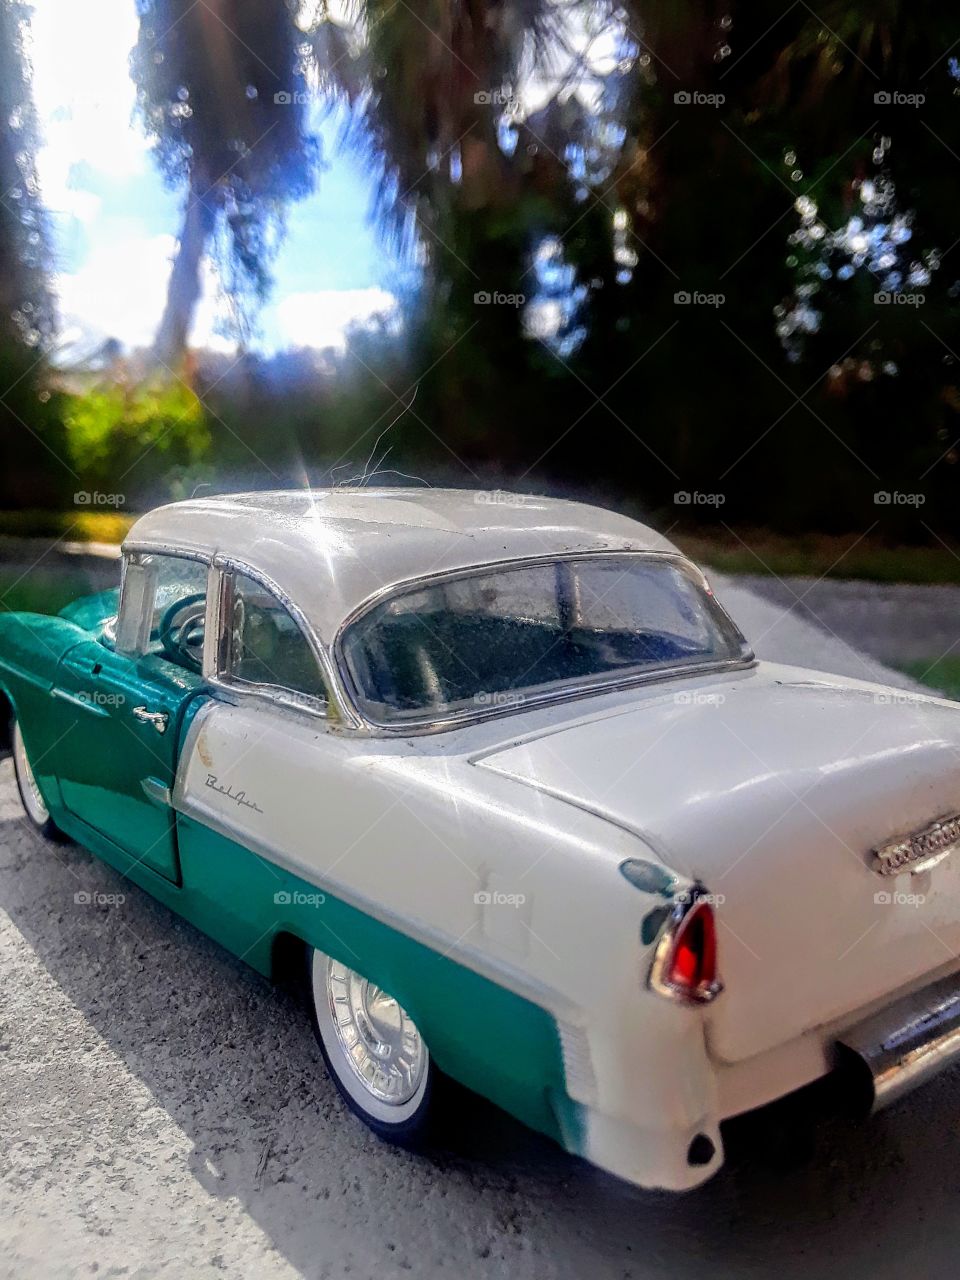 1955 Toy Vintage Bel Air Car